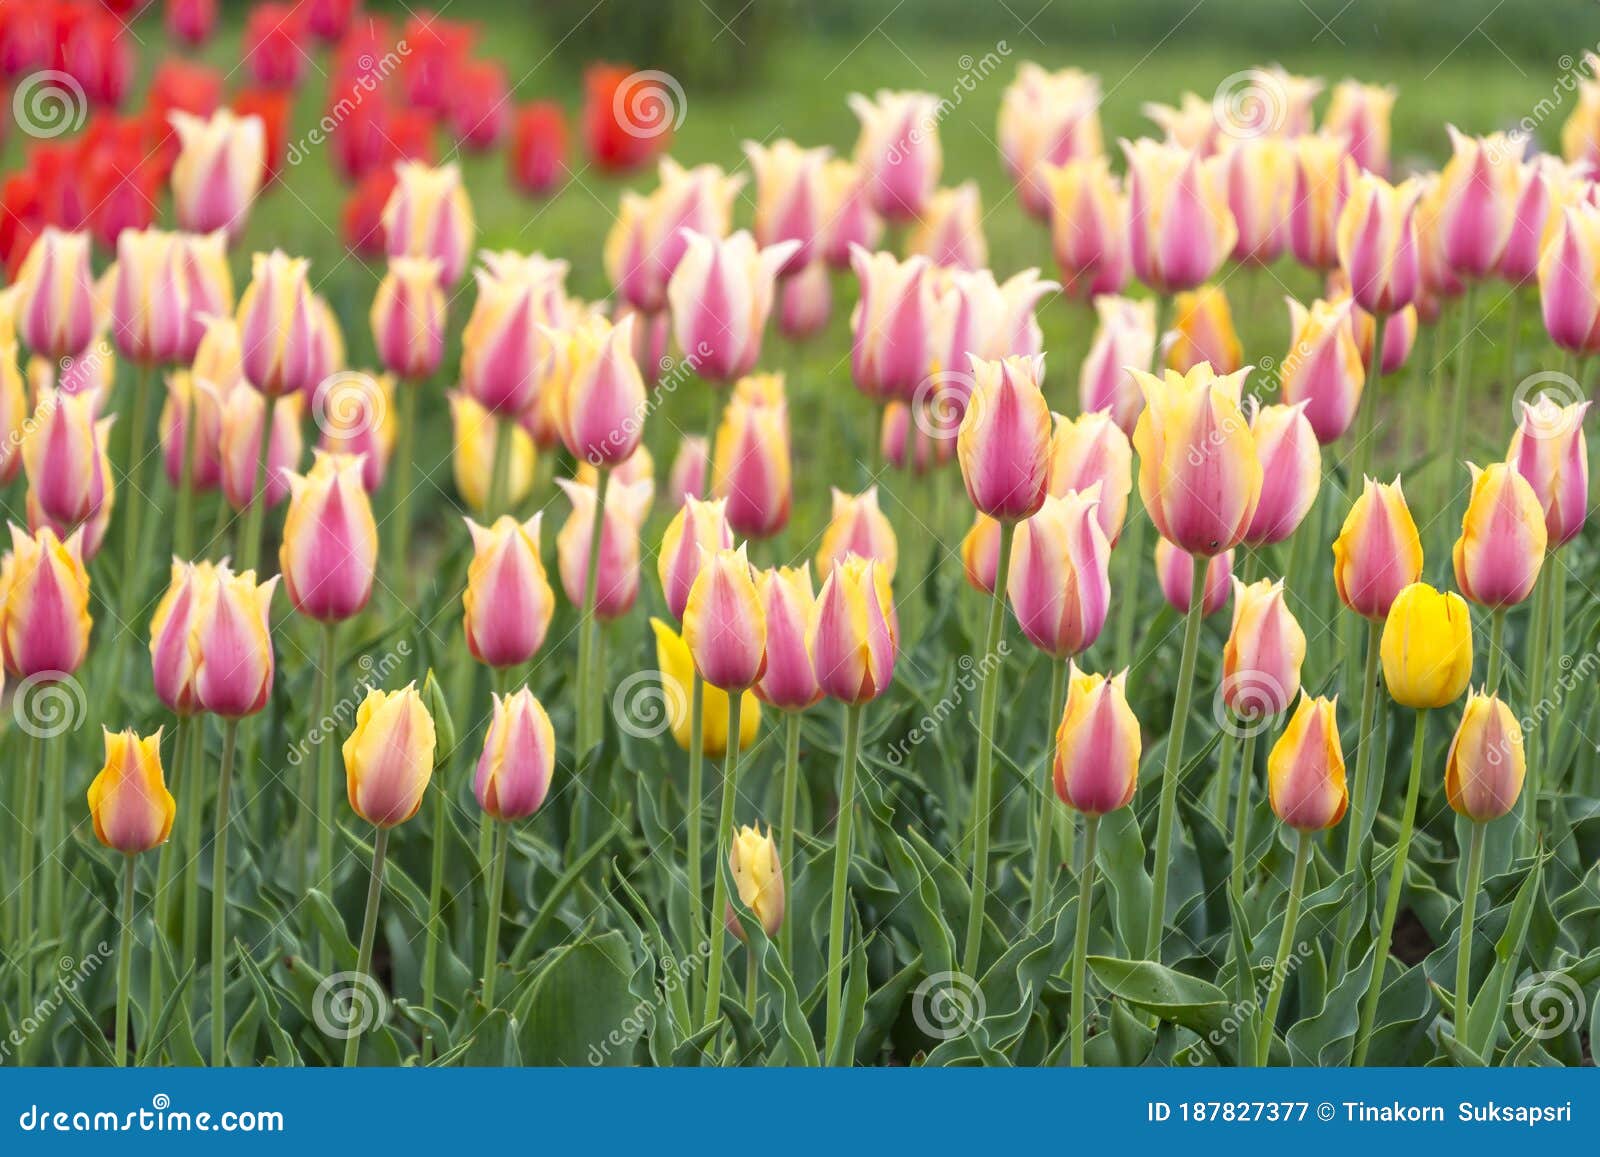 Beautiful Tulip Flowers at Eden in Indira Gandhi Memorial Tulip Garden ...